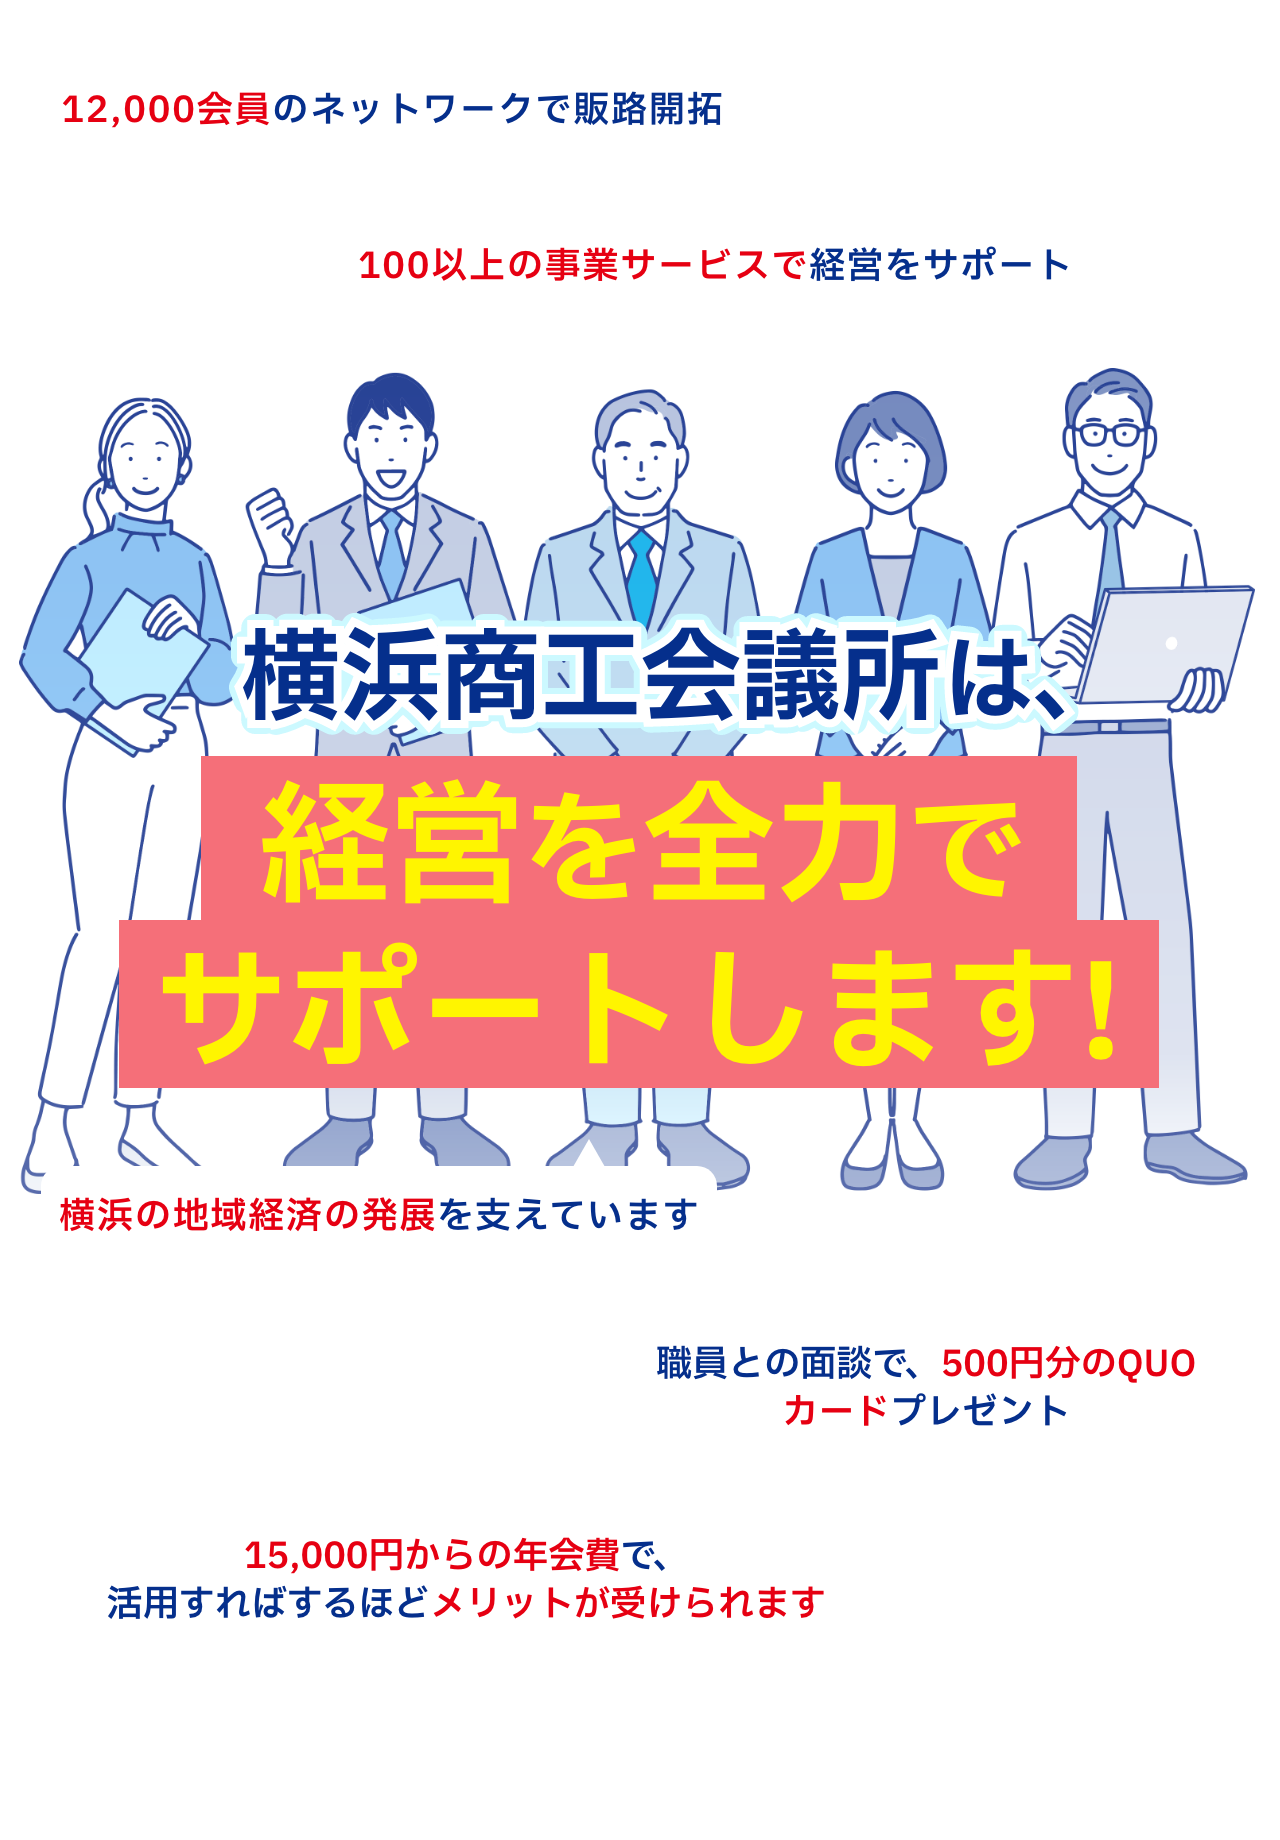 横浜商工会議所は、経営を全力でサポートします!